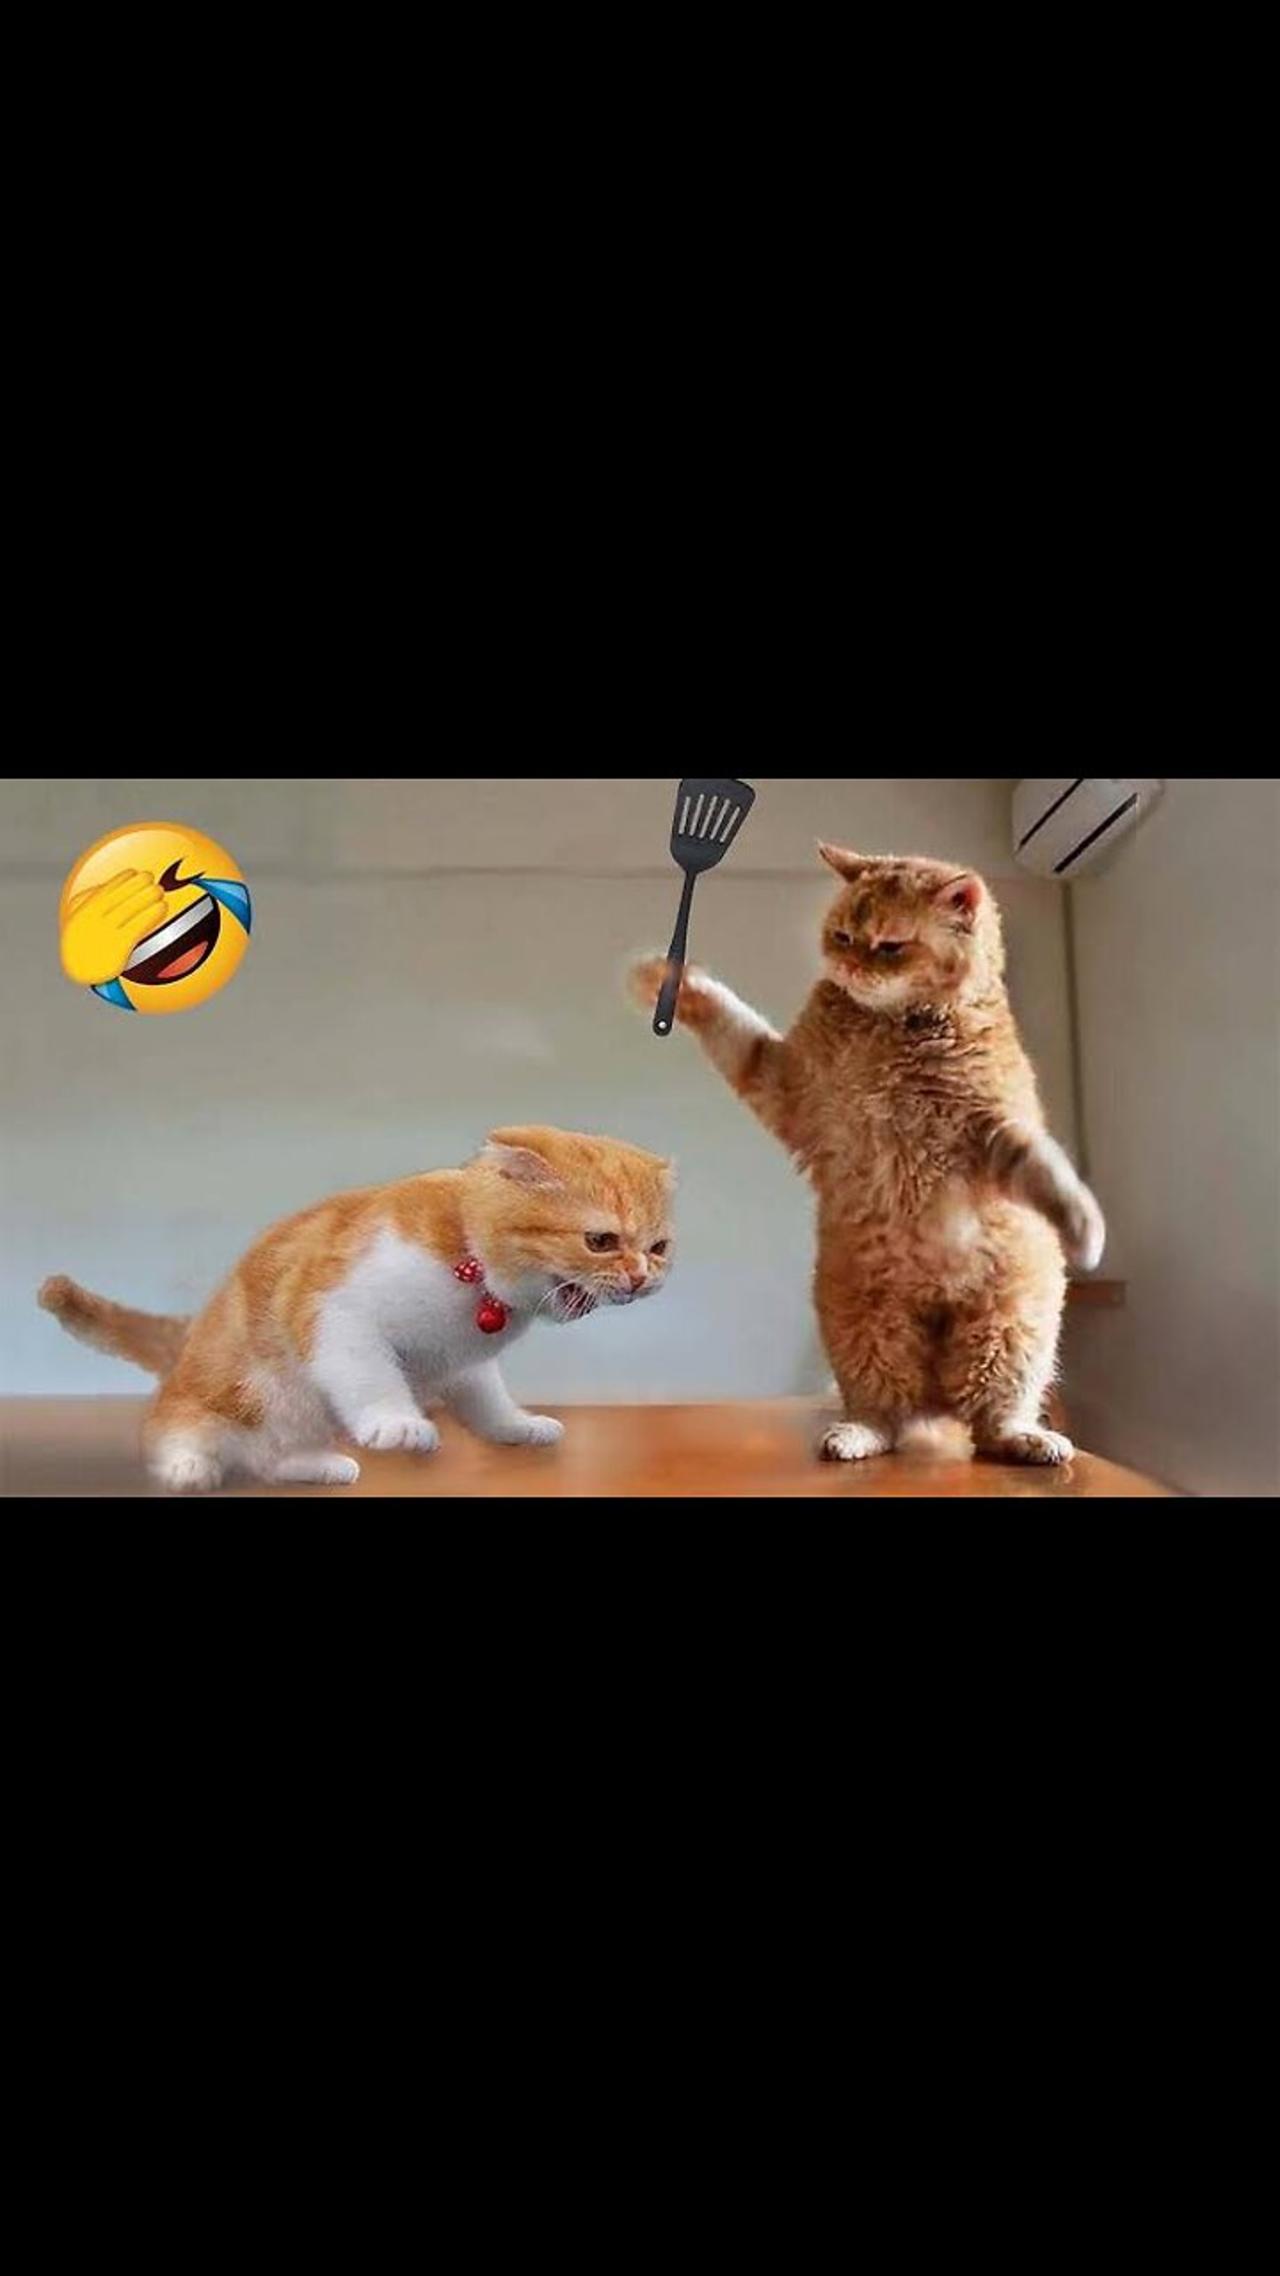 Cat Vs Dog Funny video 🤣 funny animal video 😂